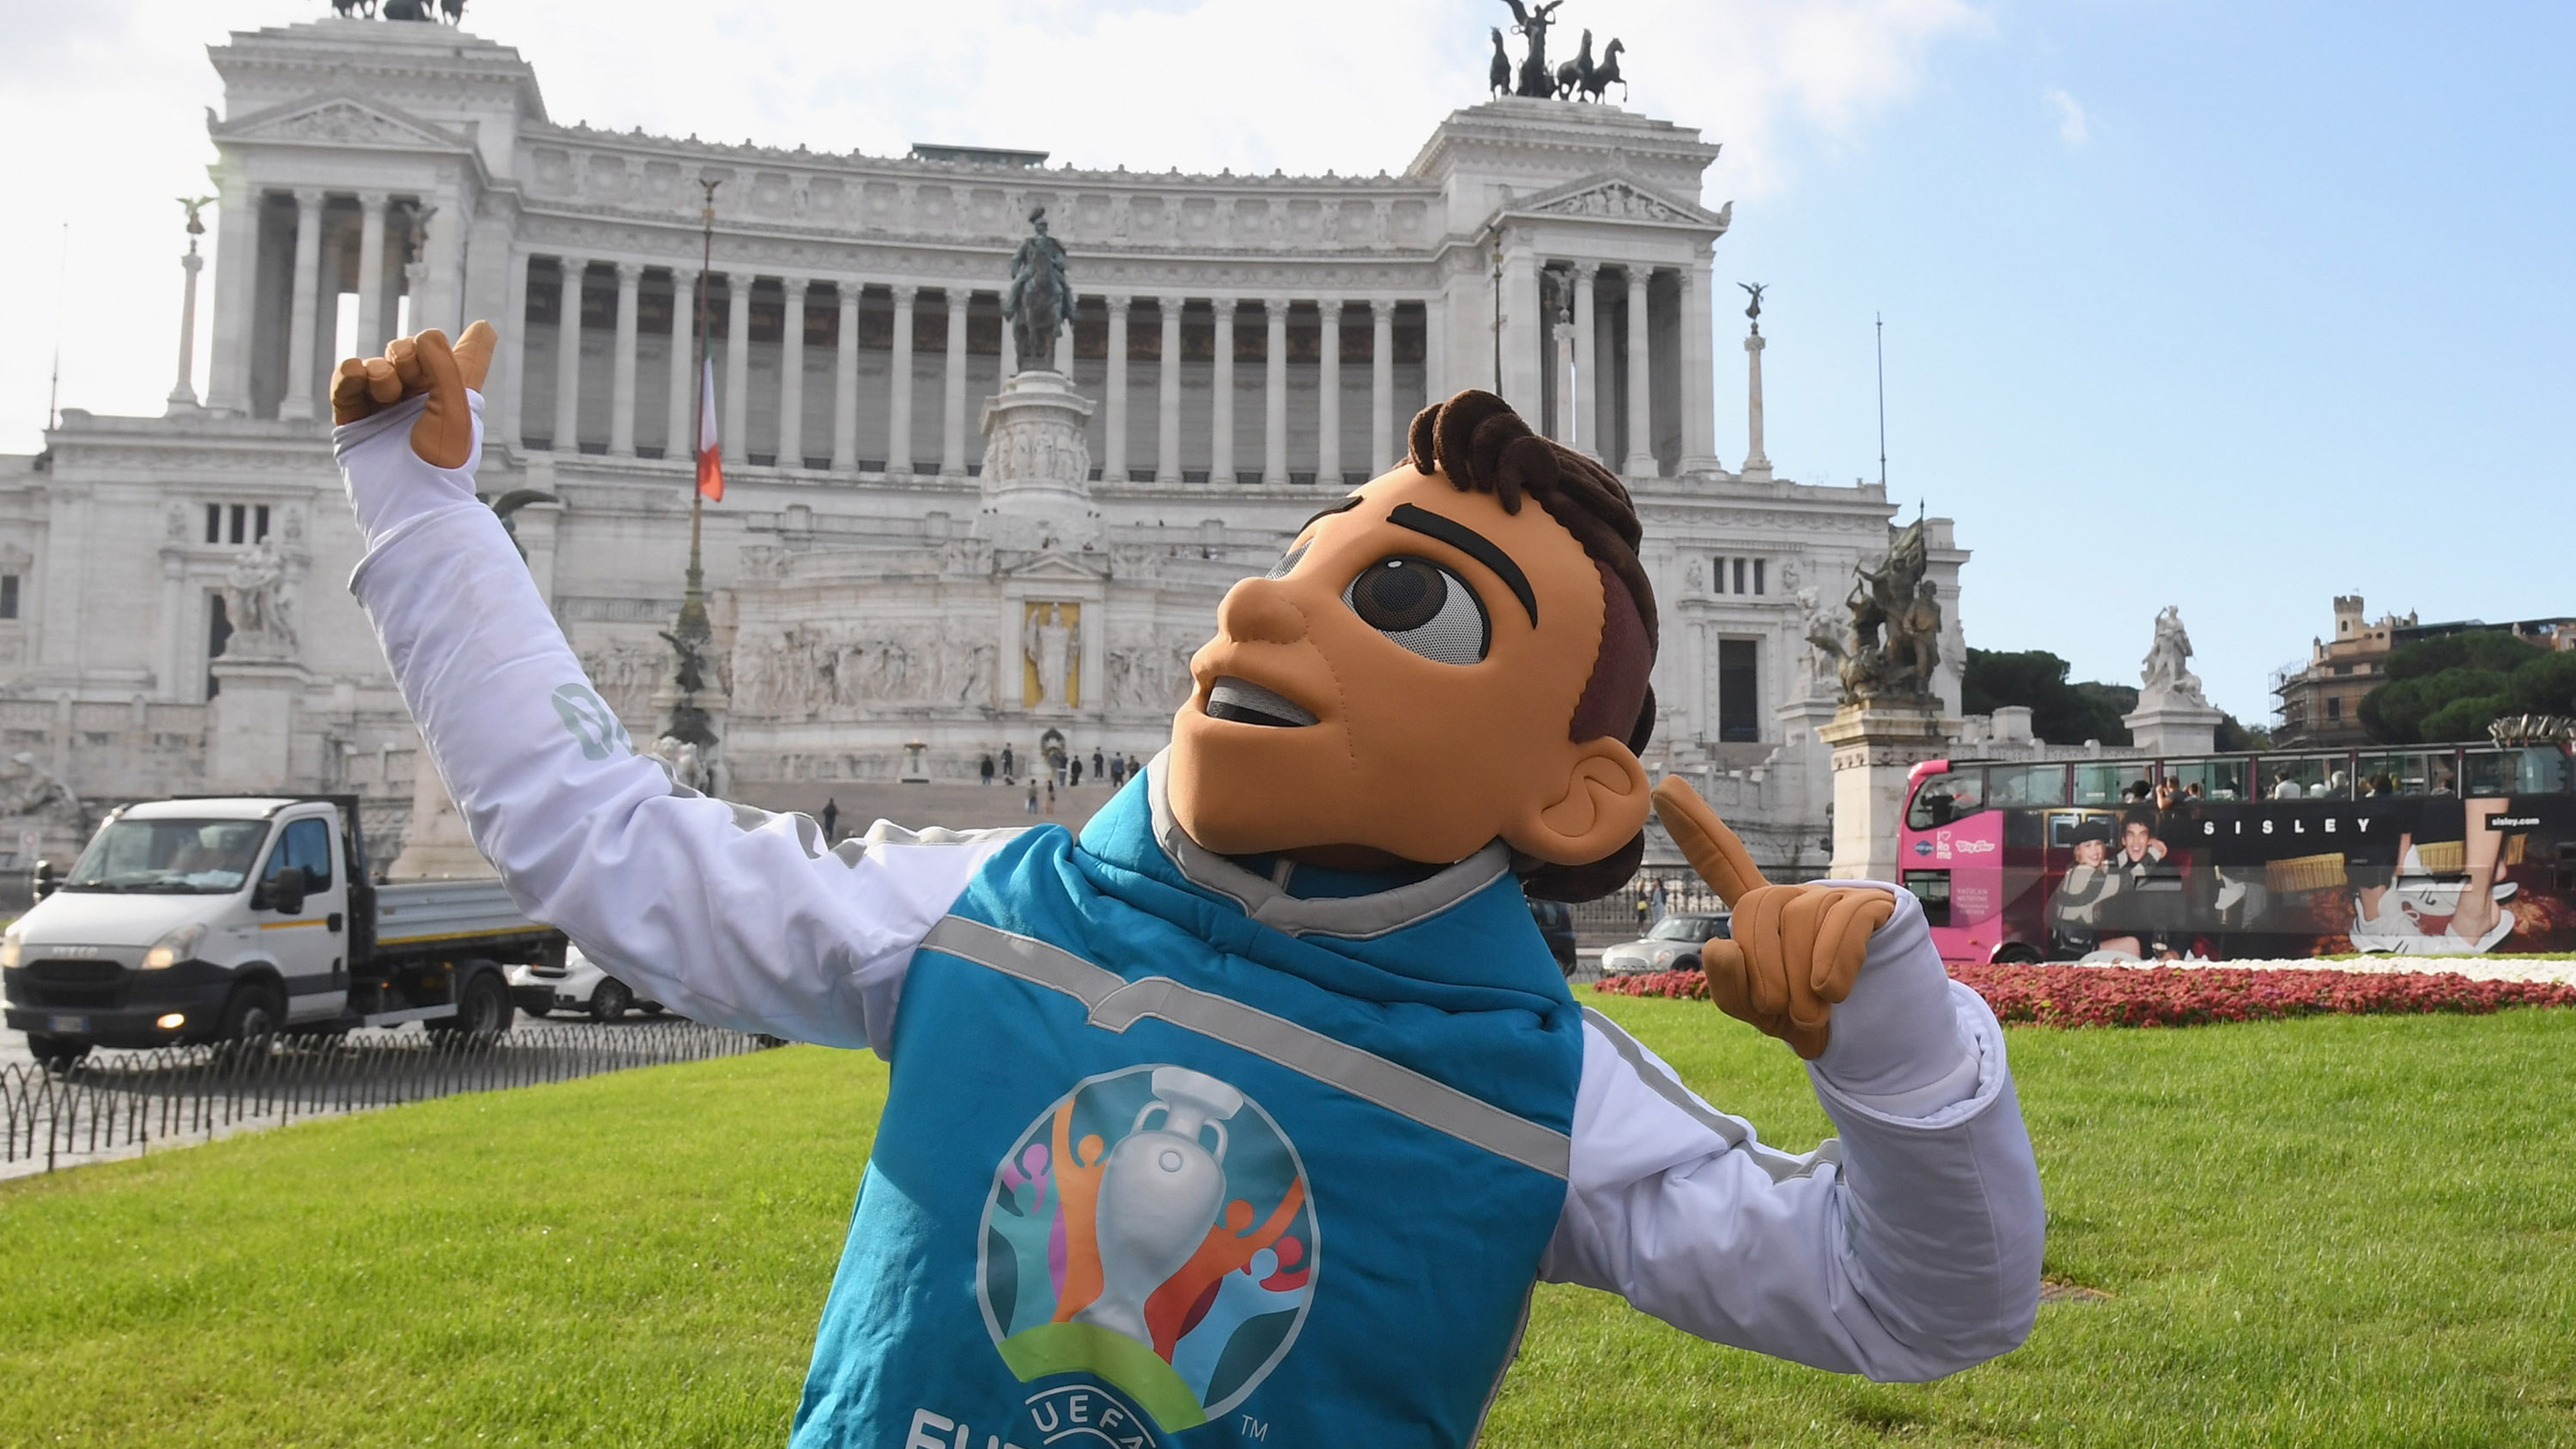 Euro 2020 live stream — the Euro 2020 mascot Skillzy in Rome